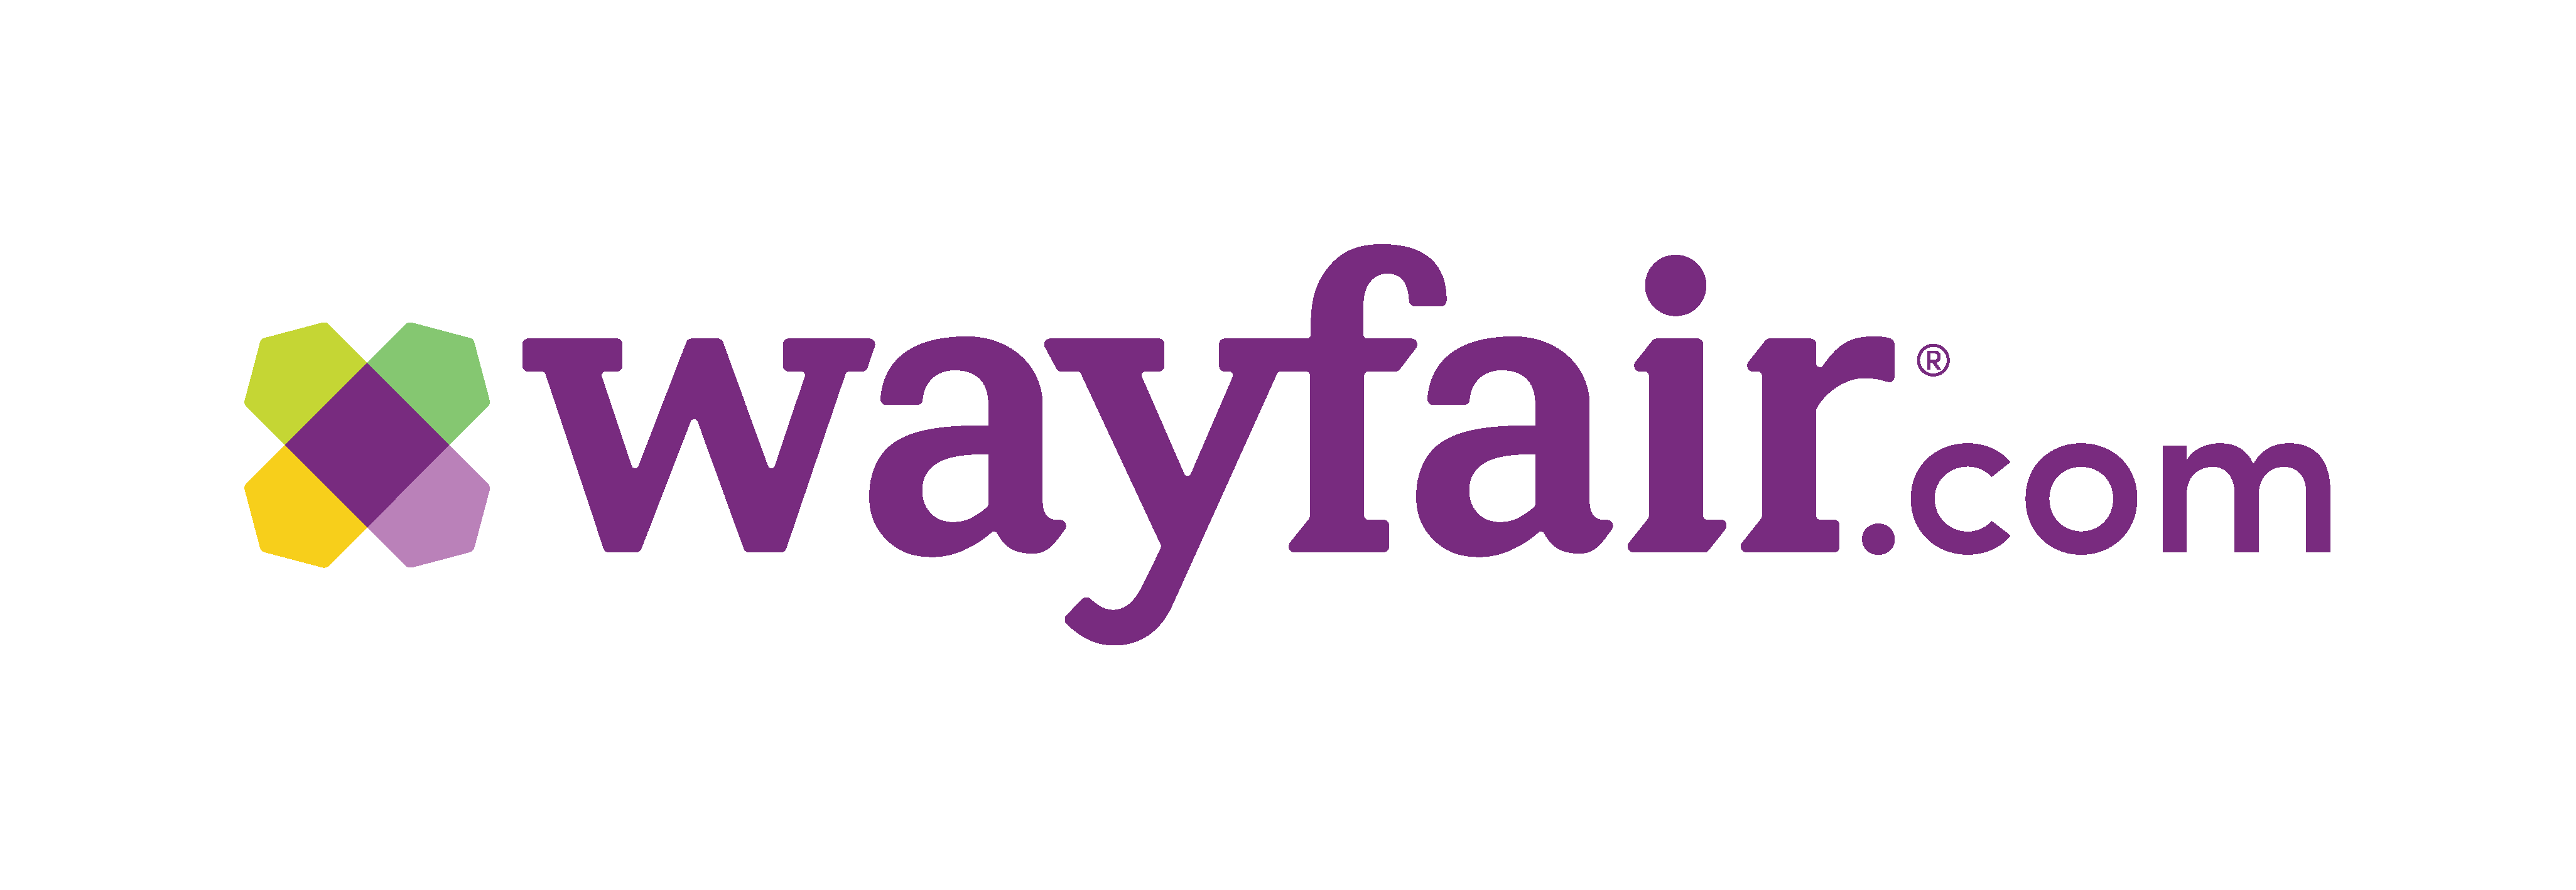 Wayfair Logo - Wayfair Logos